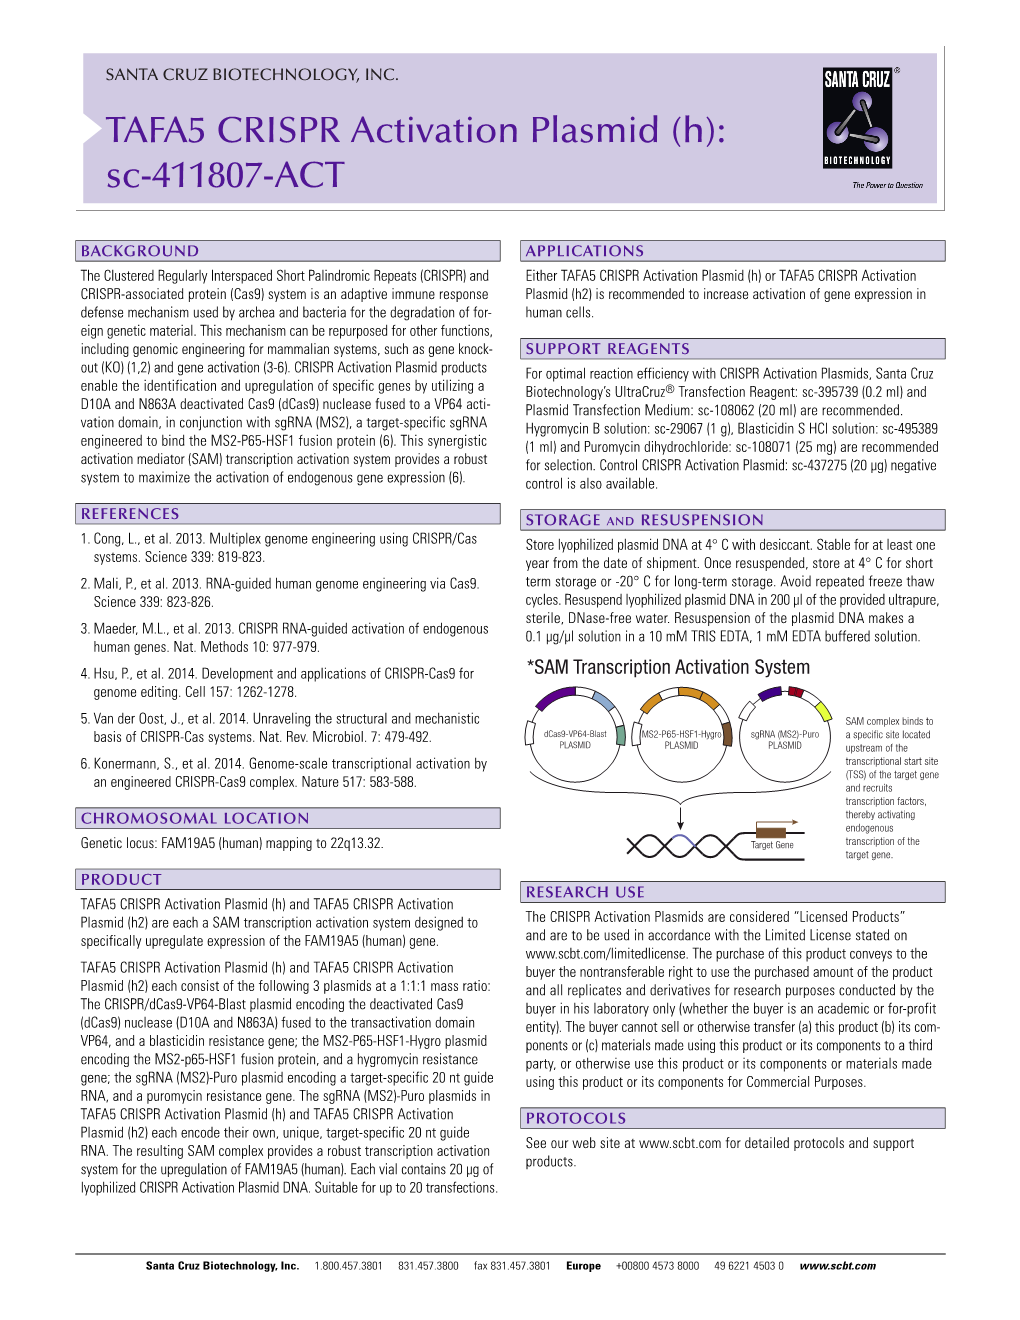 TAFA5 CRISPR Activation Plasmid (H): Sc-411807-ACT